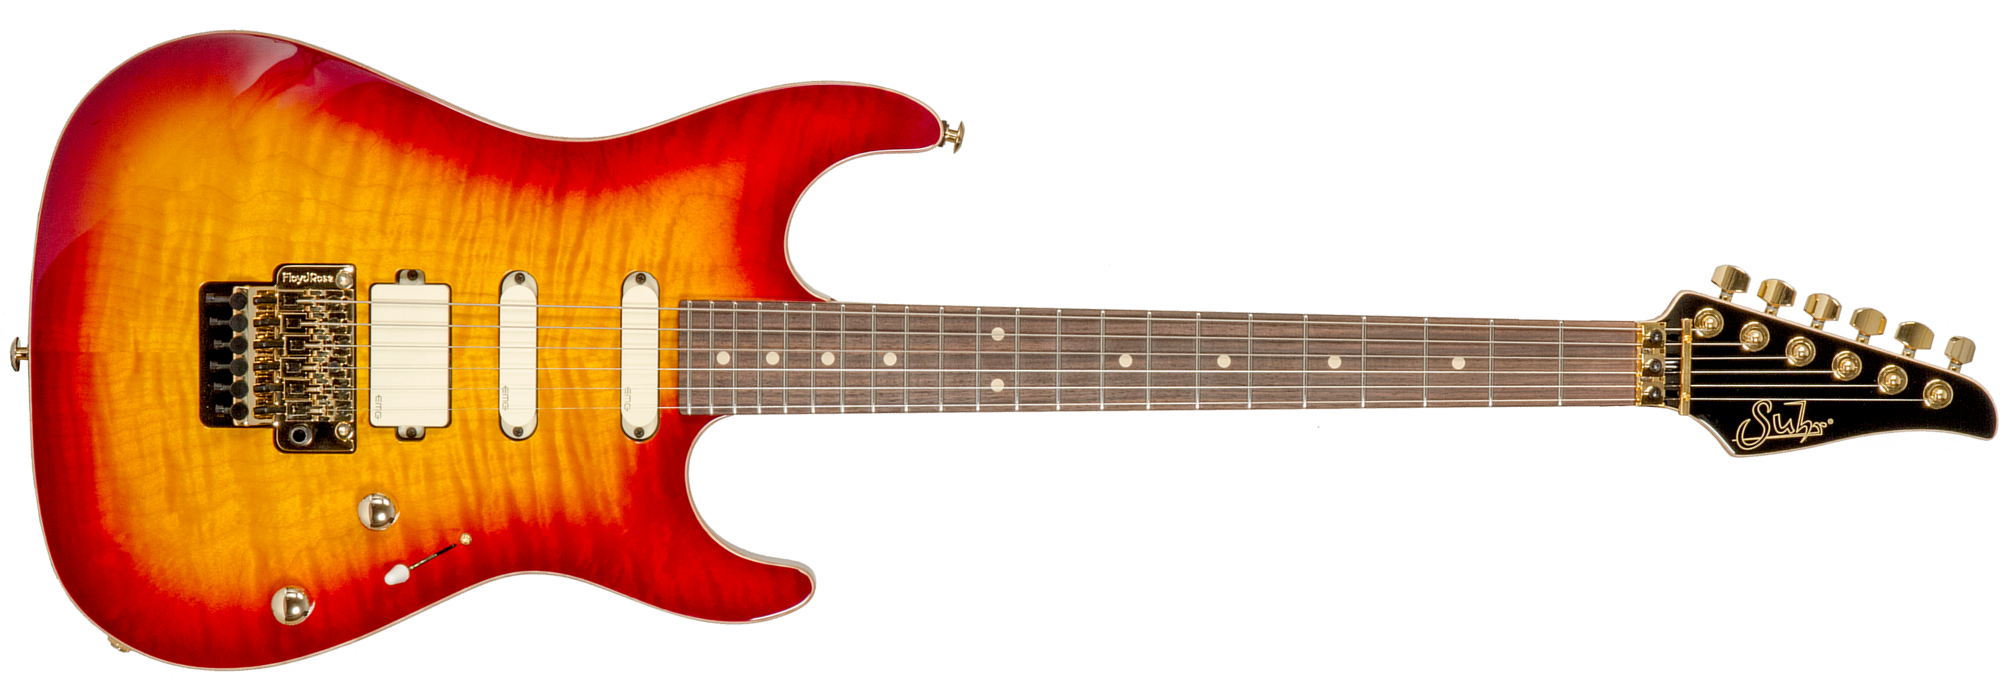 Suhr Standard Legacy 01-ltd-0030 Hss Emg Fr Rw #72940 - Aged Cherry Burst - Elektrische gitaar in Str-vorm - Main picture